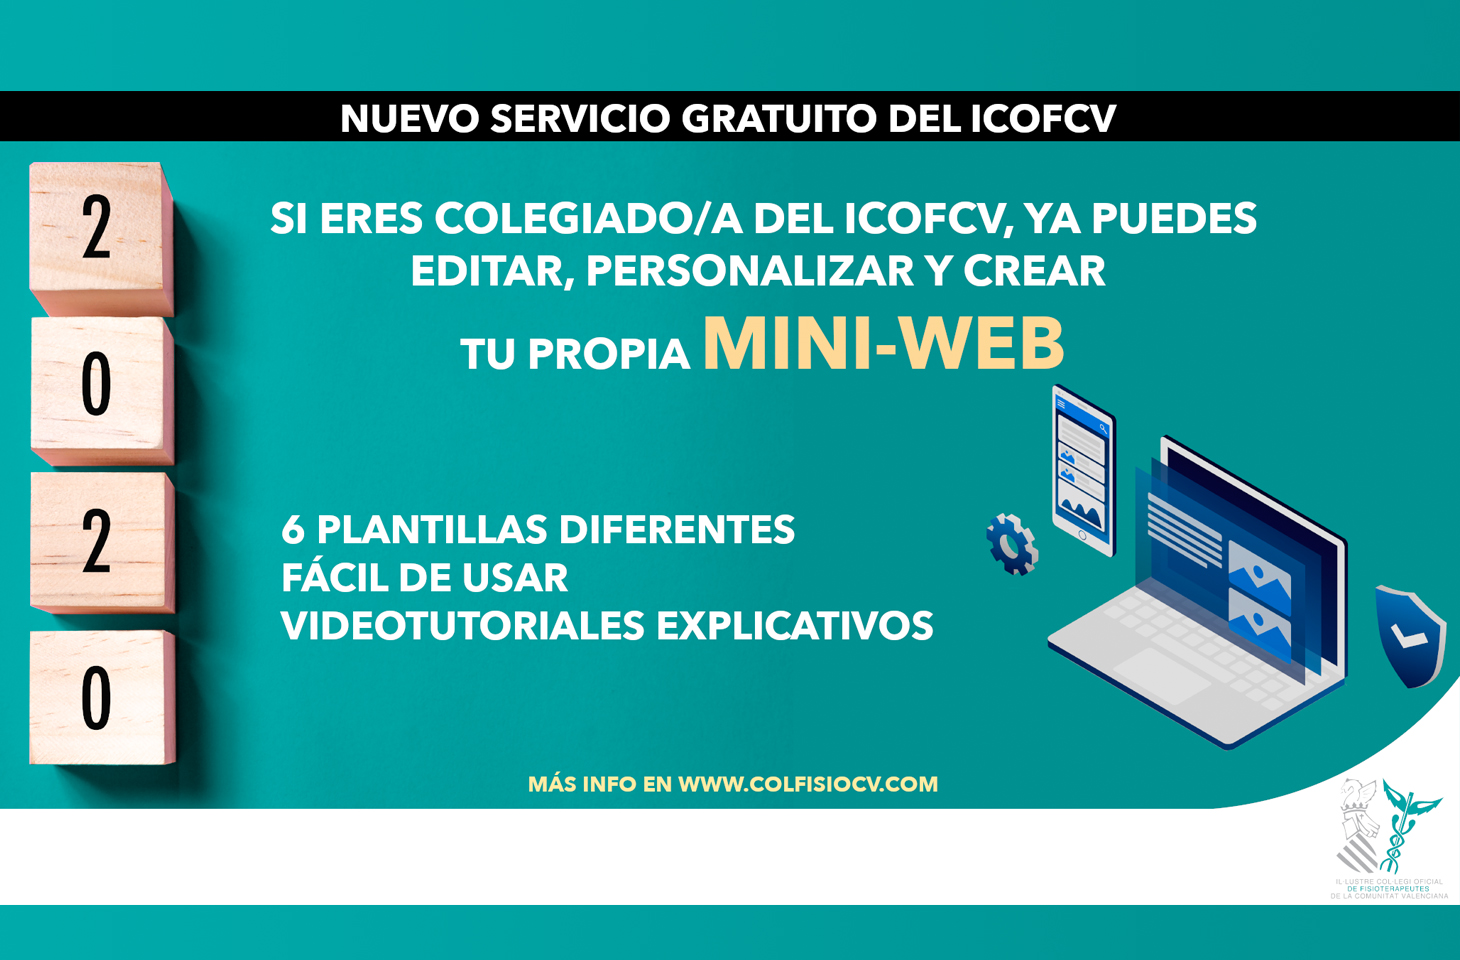 Ponemos en marcha un servicio gratuito de páginas mini-webs para colegiados del ICOFCV 